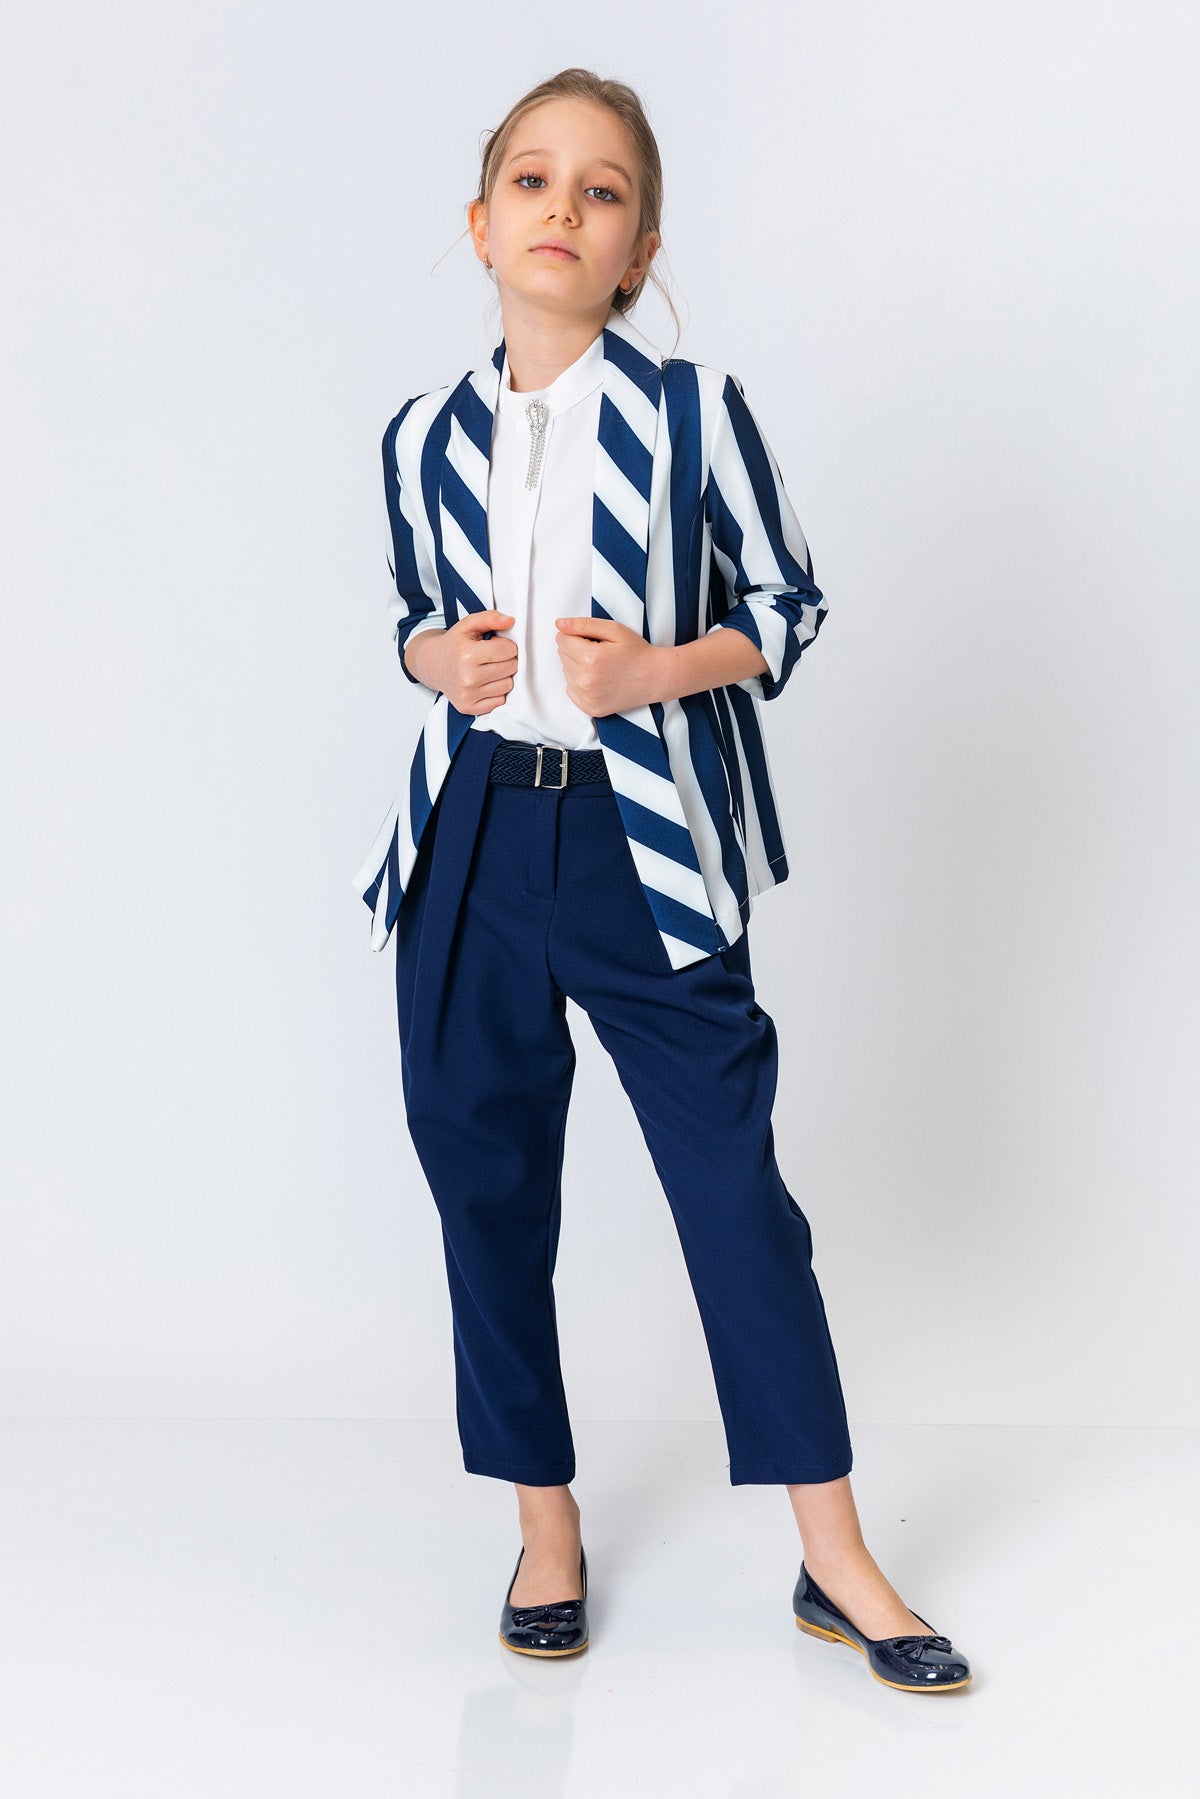 InCity Girls (8165) - Tween Striped Open Front 3/4 Sleeve Dress Jacket